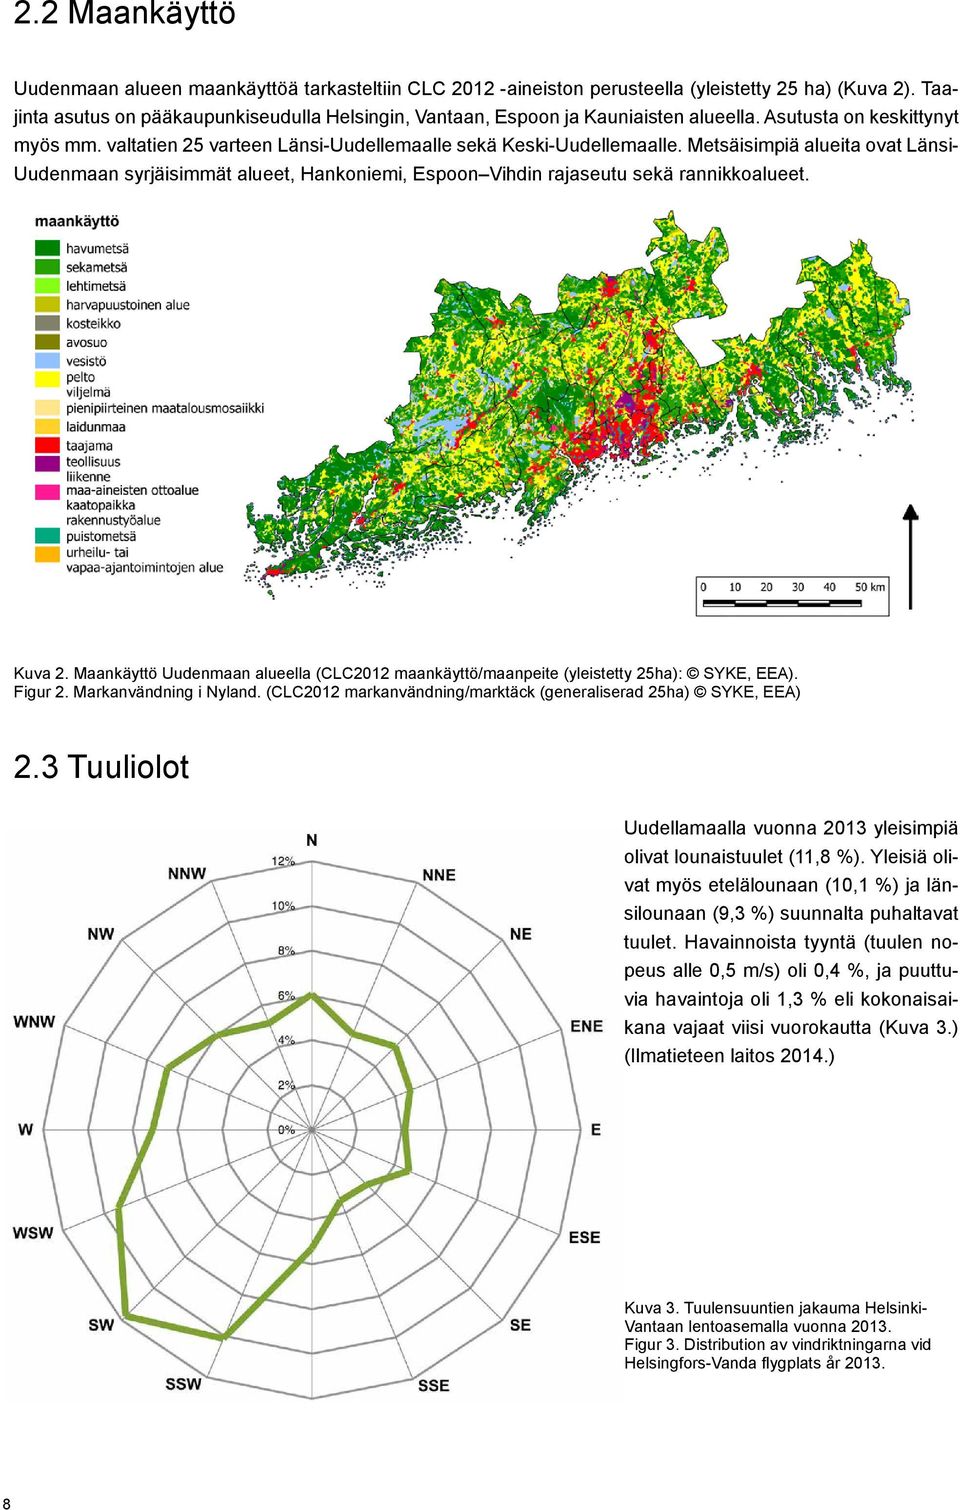 Metsäisimpiä alueita ovat Länsi- Uudenmaan syrjäisimmät alueet, Hankoniemi, Espoon Vihdin rajaseutu sekä rannikkoalueet. Kuva 2.